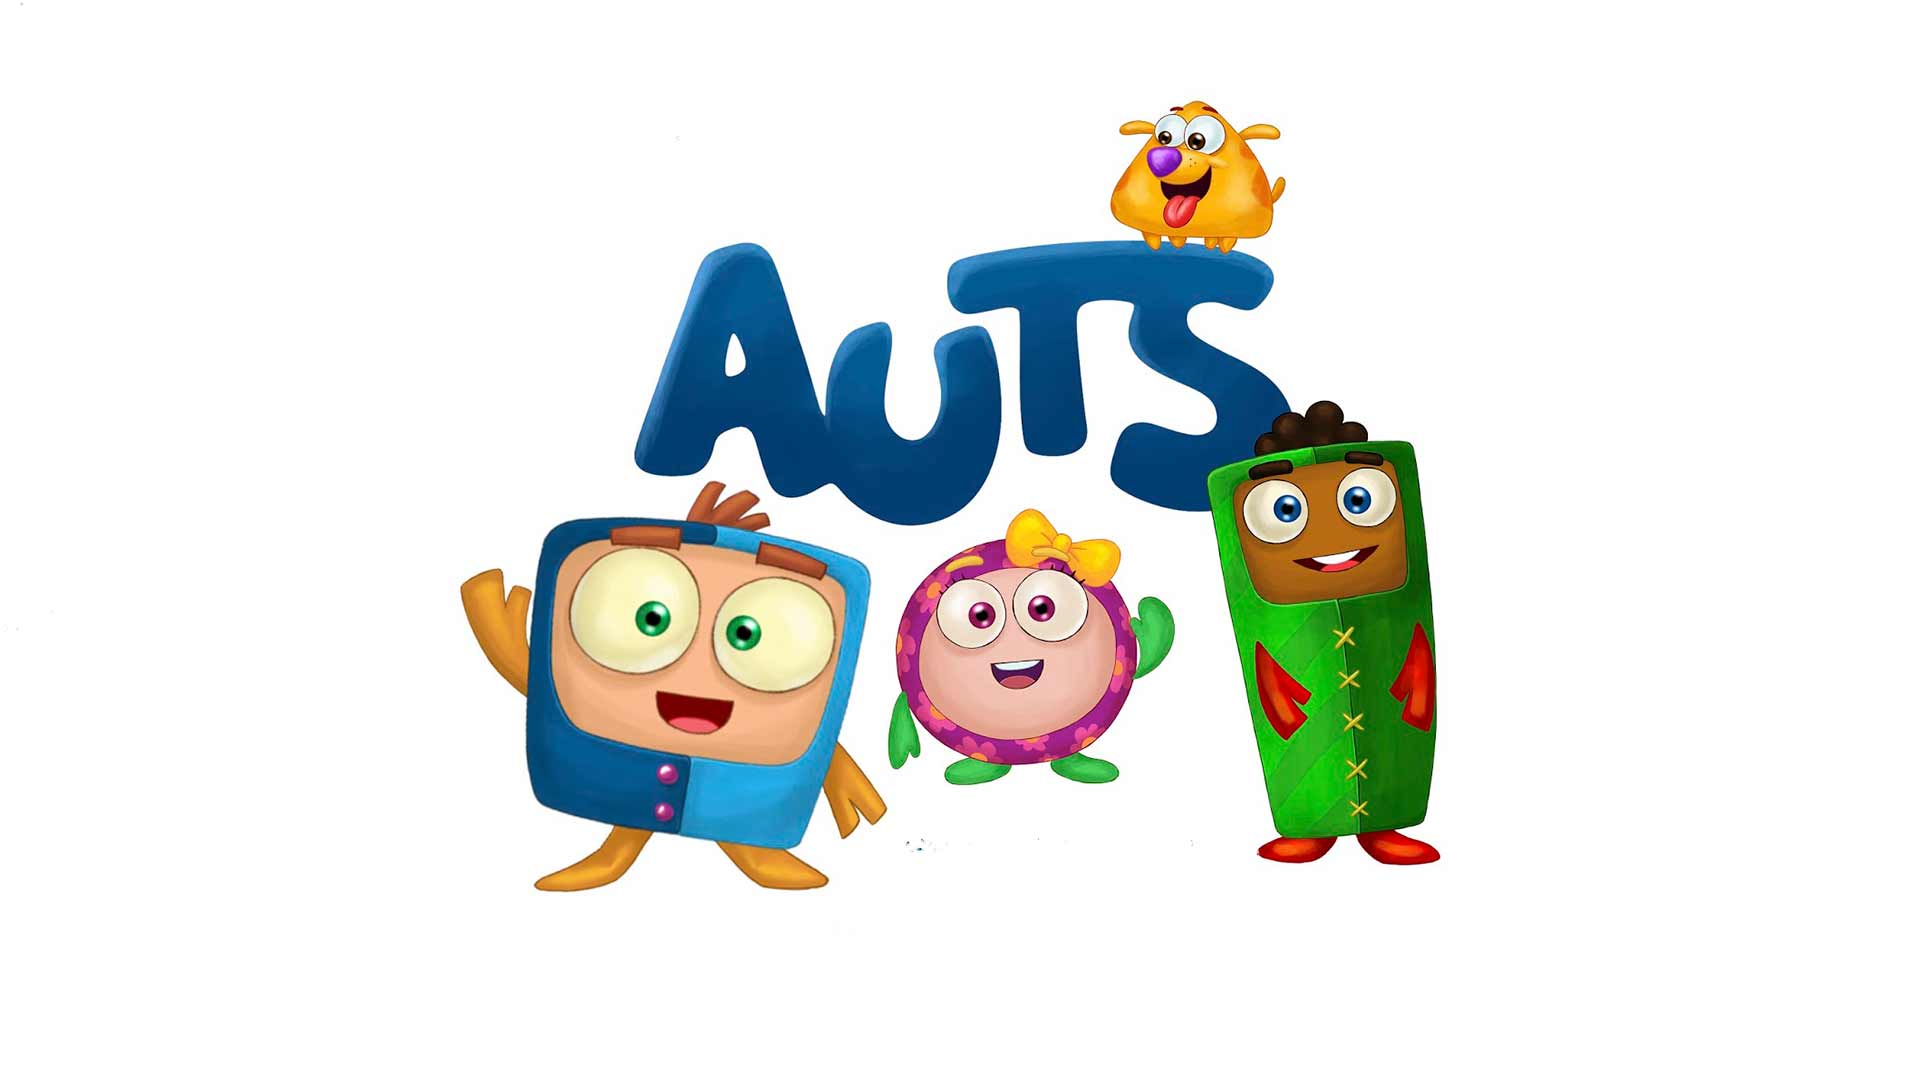 Personagens Autistas — O personagem autista do dia é: Art3mis, do filme